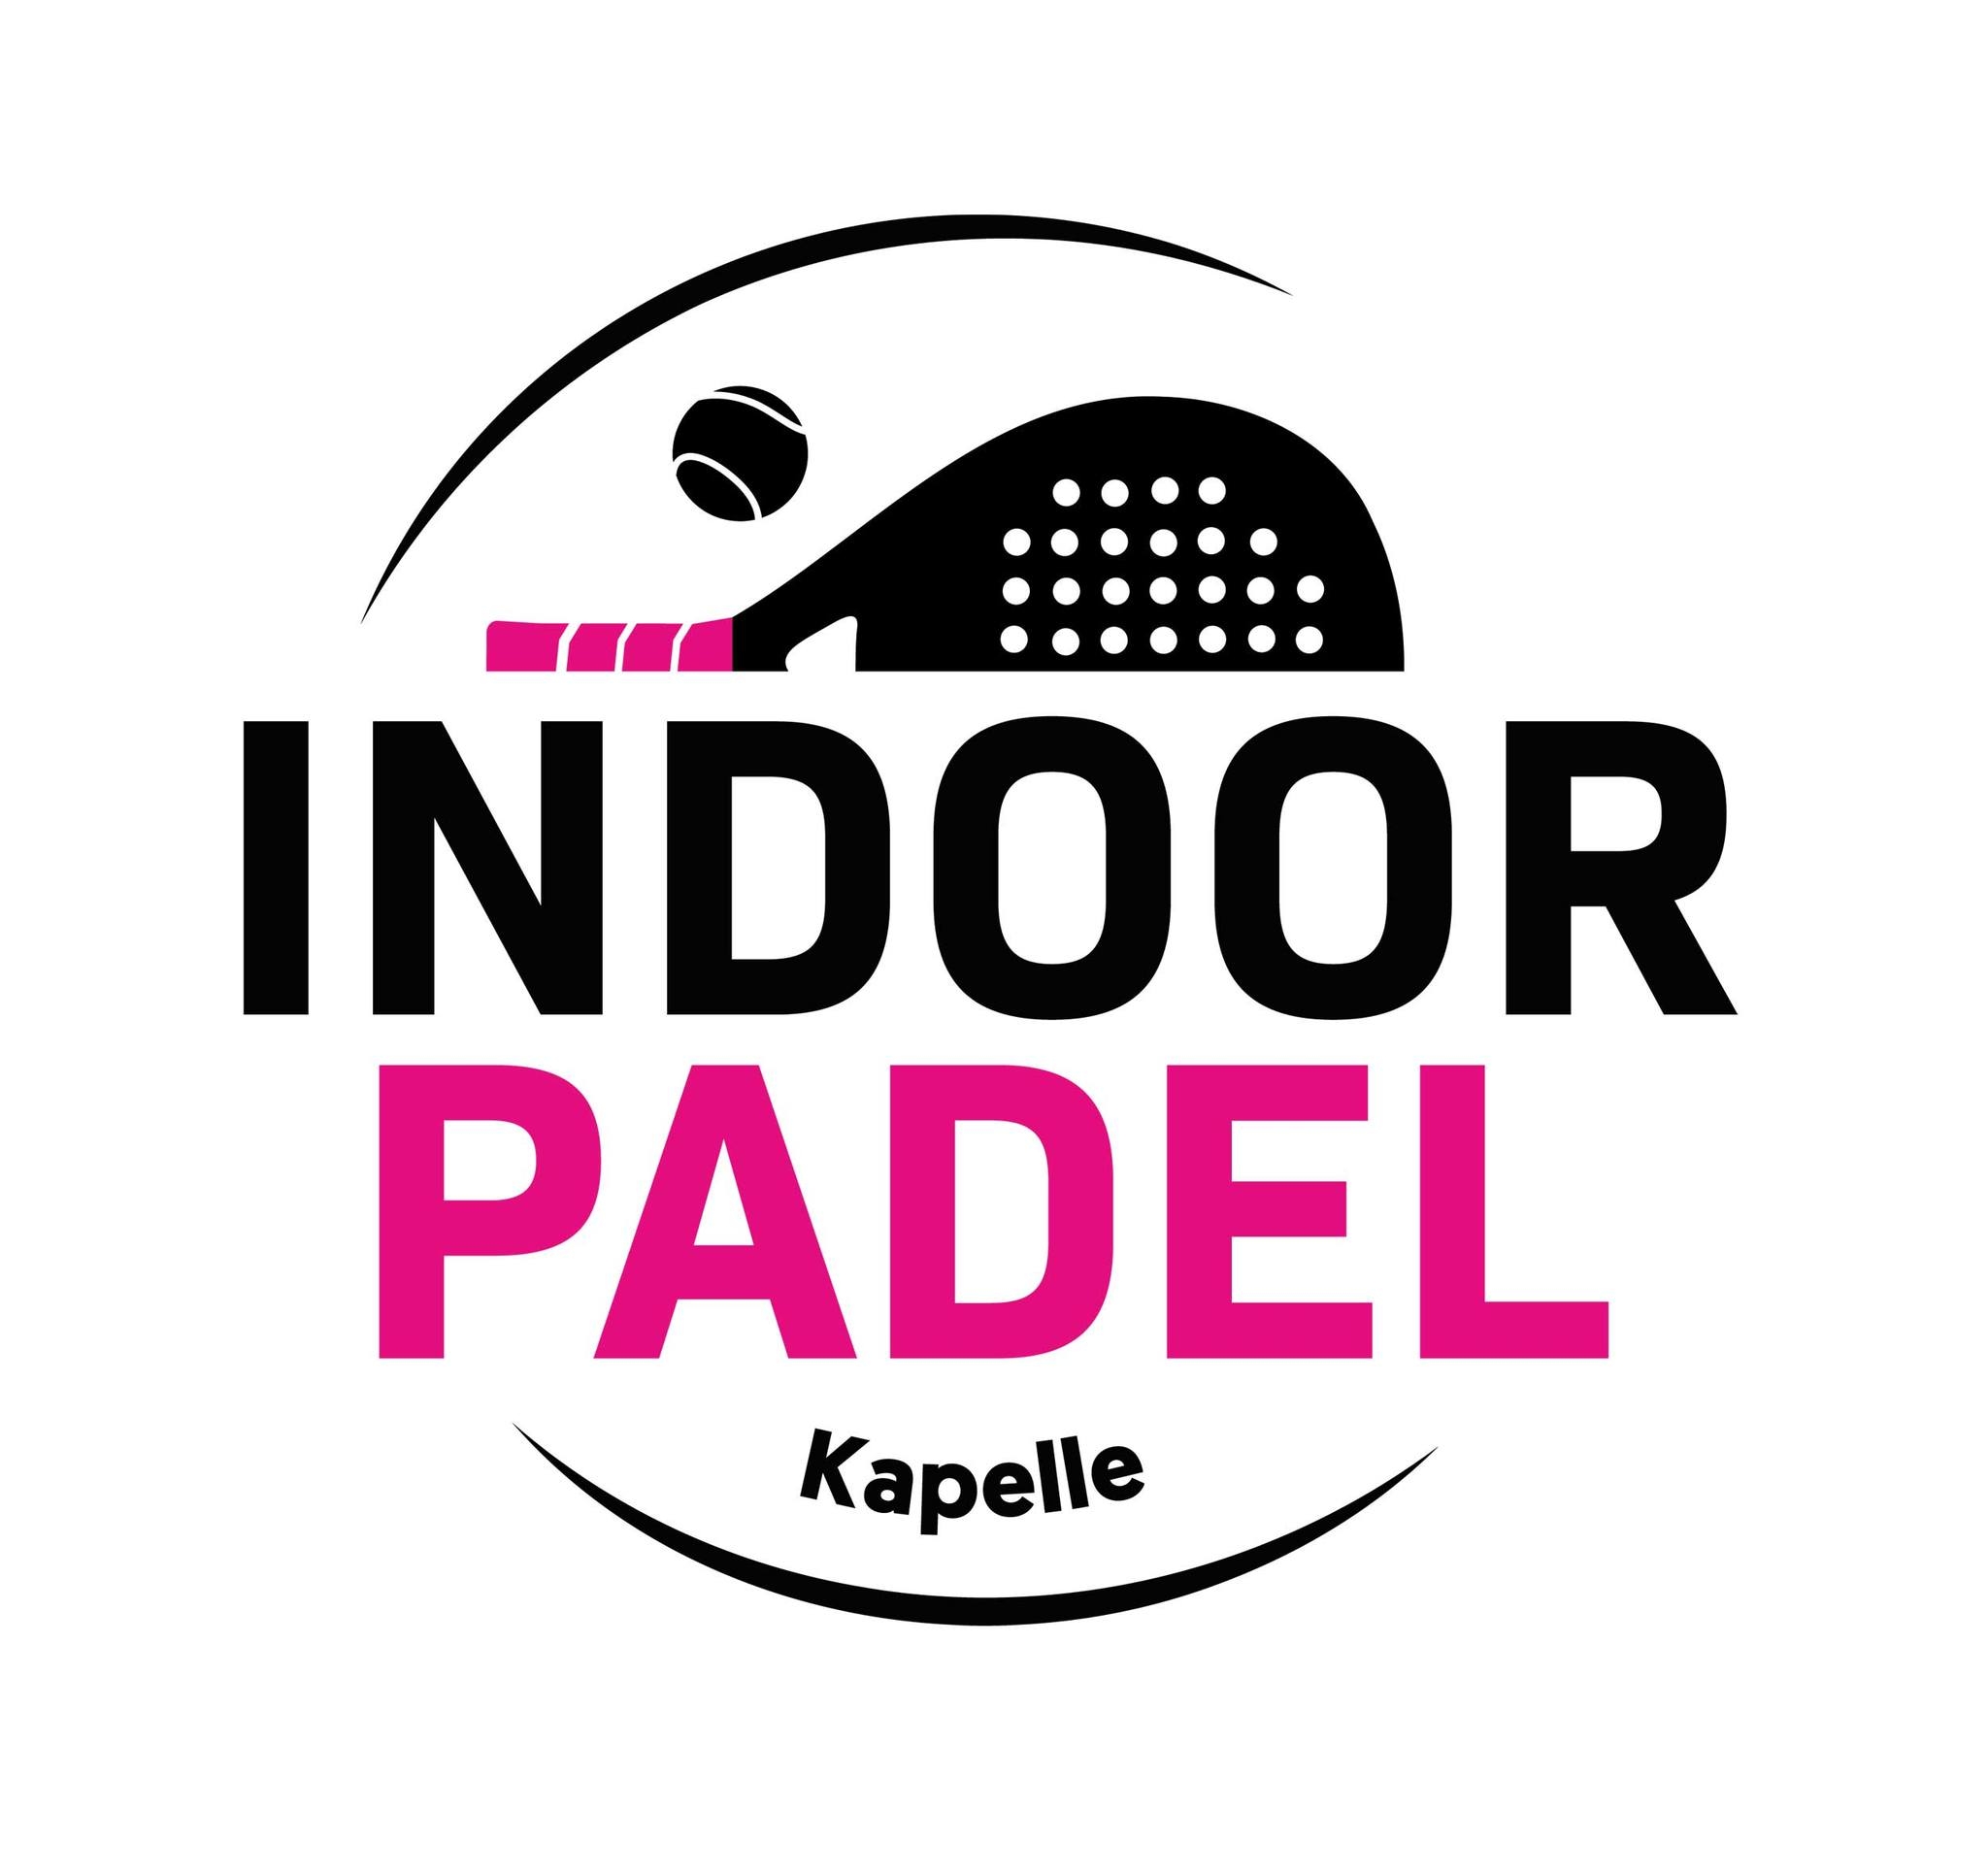 Logo Indoor Padel Kapelle